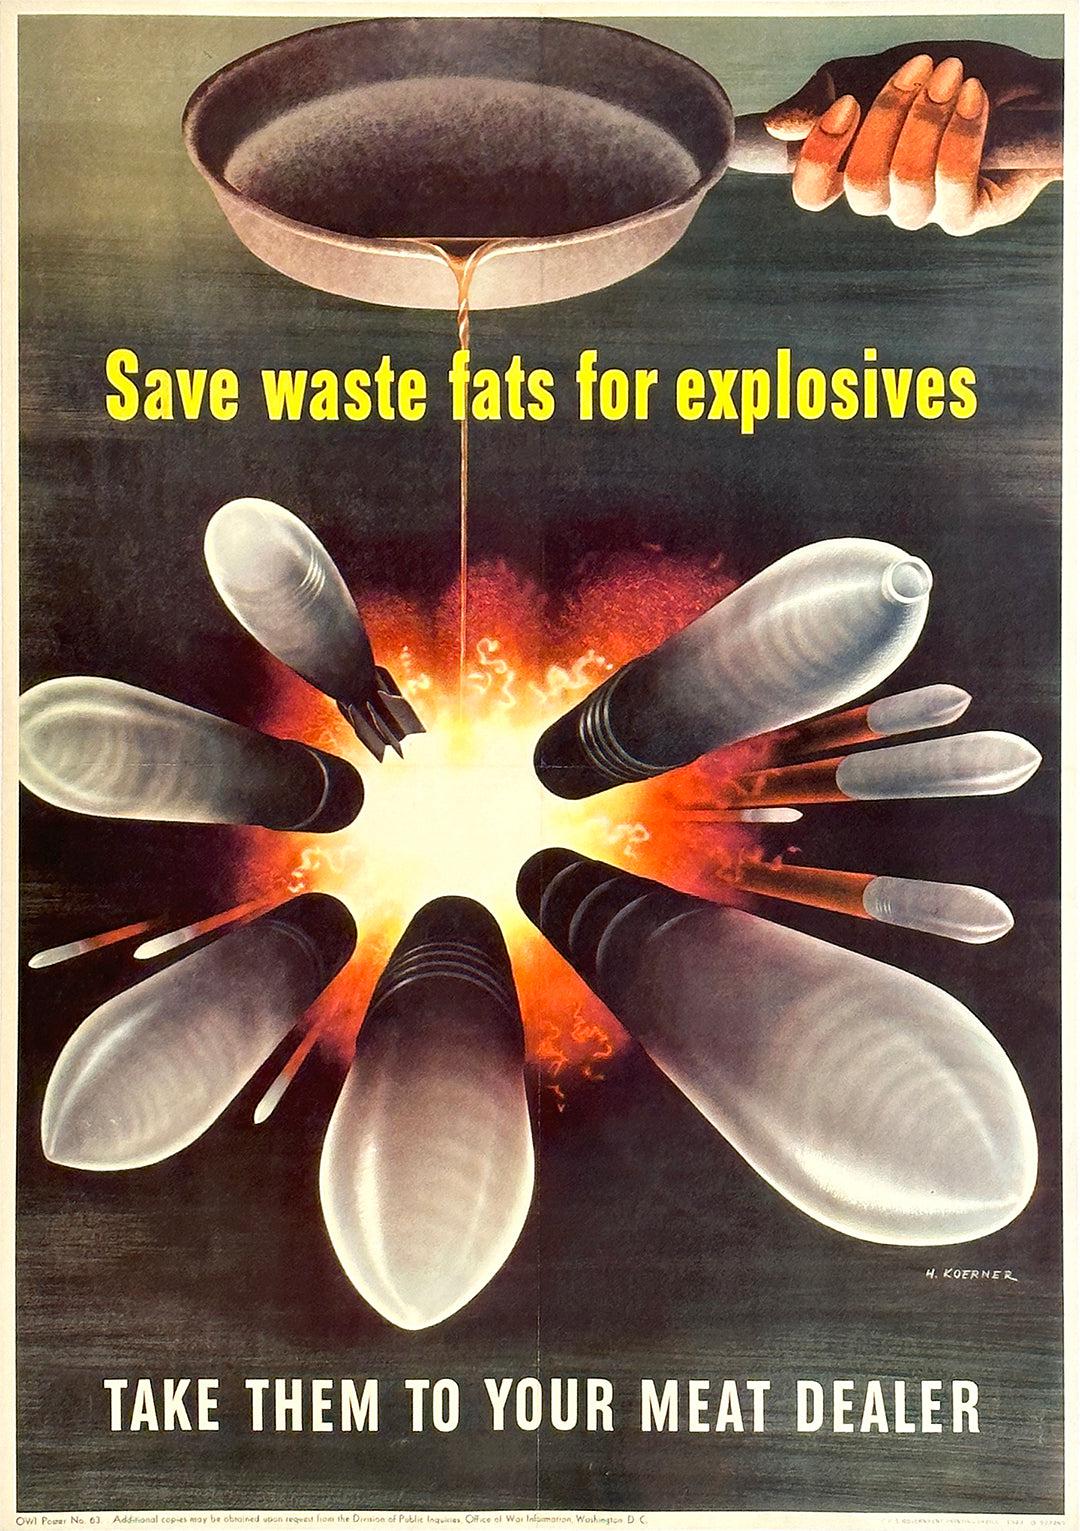 Original Save Waste Fats for Explosives Poster 1943 by Henry Koerner